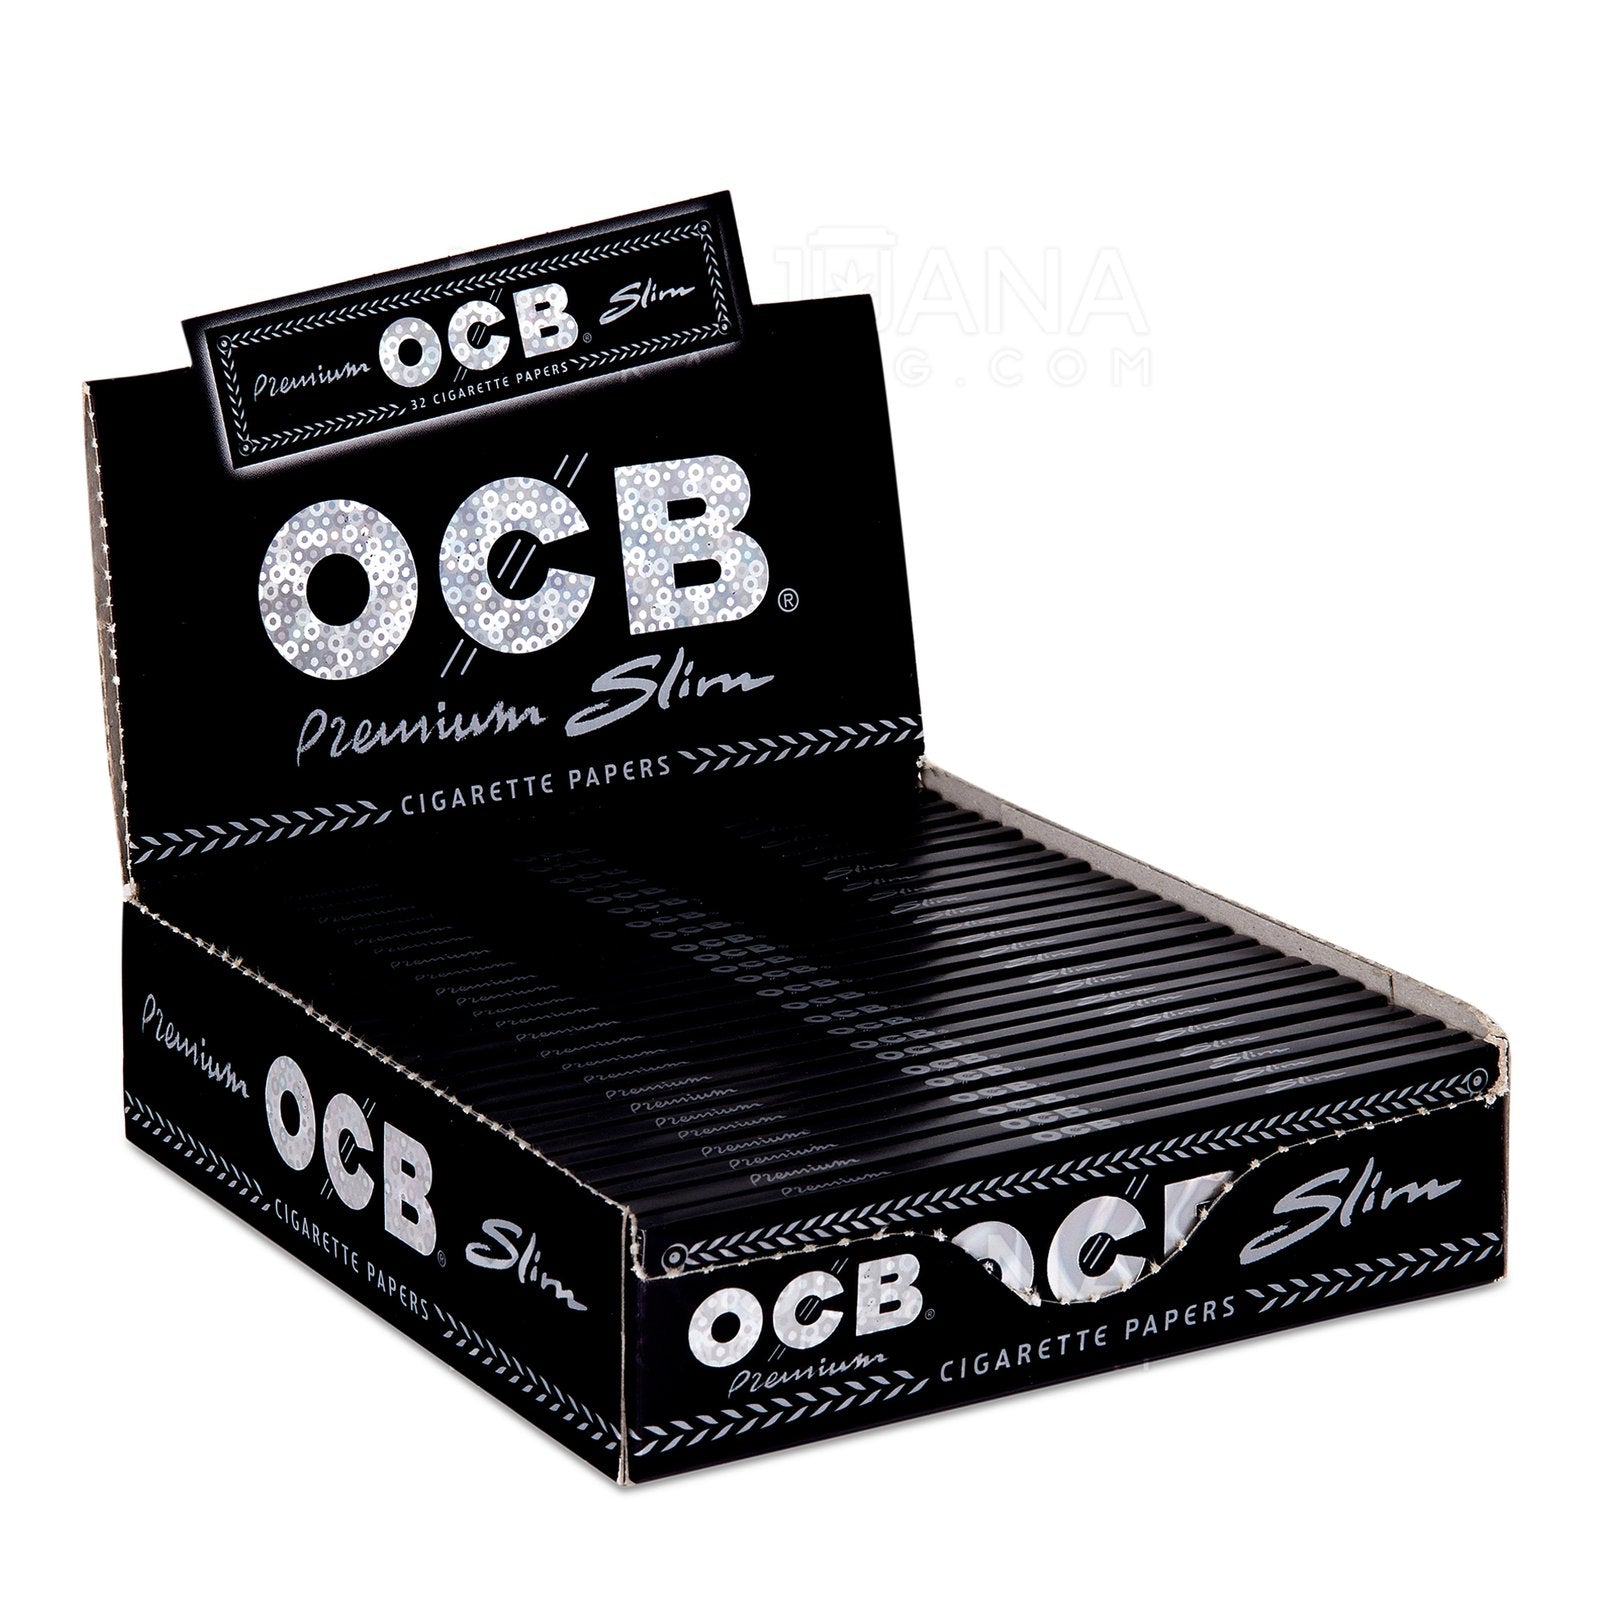 OCB Ultimate Rolls  Wise Skies Smoking Accessories